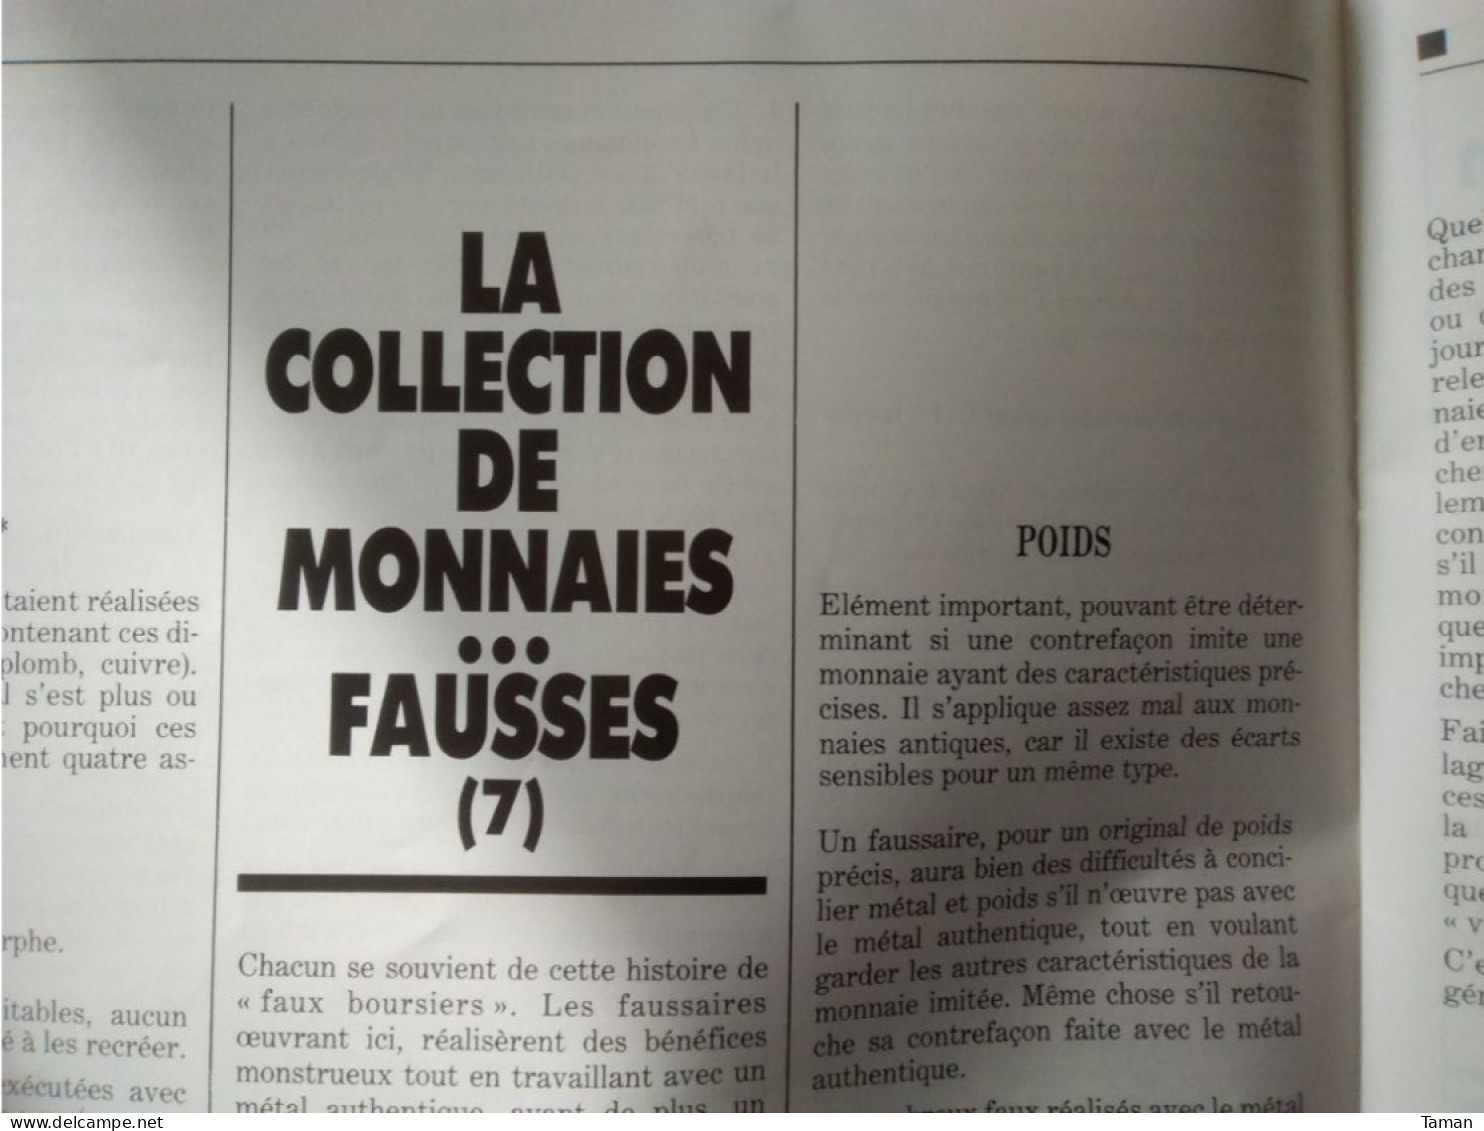 Numismatique & change - Monnaies fausses - Notre Franc - Victor Hugo - 10 F - Les 5 F des révolutions